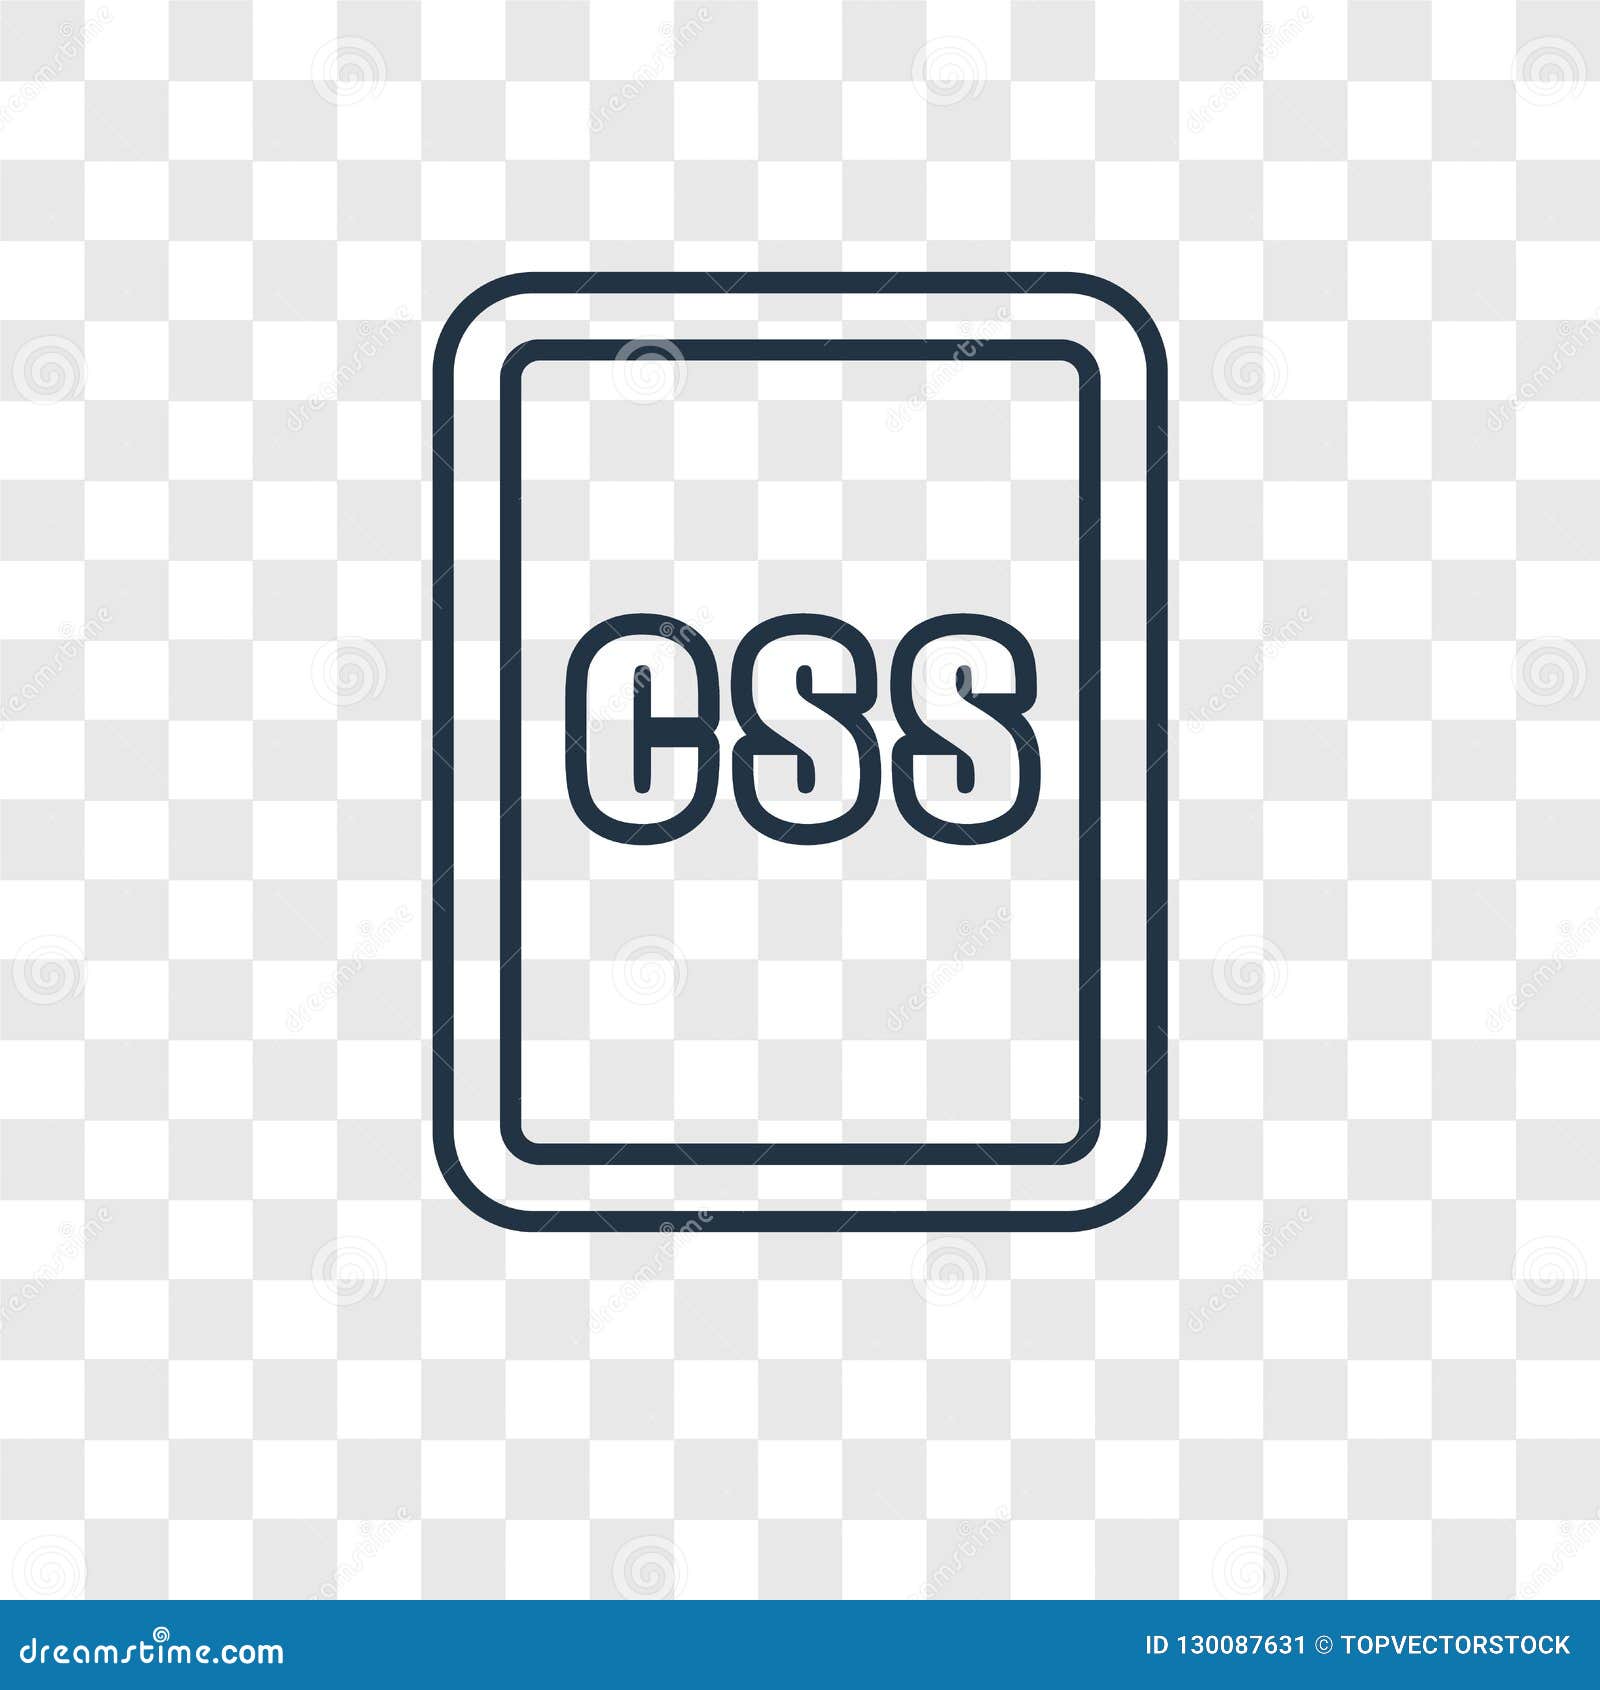 CSS concept là một khái niệm mới lạ và thú vị đối với những người thiết kế web. Nếu bạn là một web developer hoặc đang tìm hiểu các khái niệm liên quan đến CSS, hãy xem ảnh liên quan đến chủ đề này và khám phá thế giới mới lạ và thú vị này.